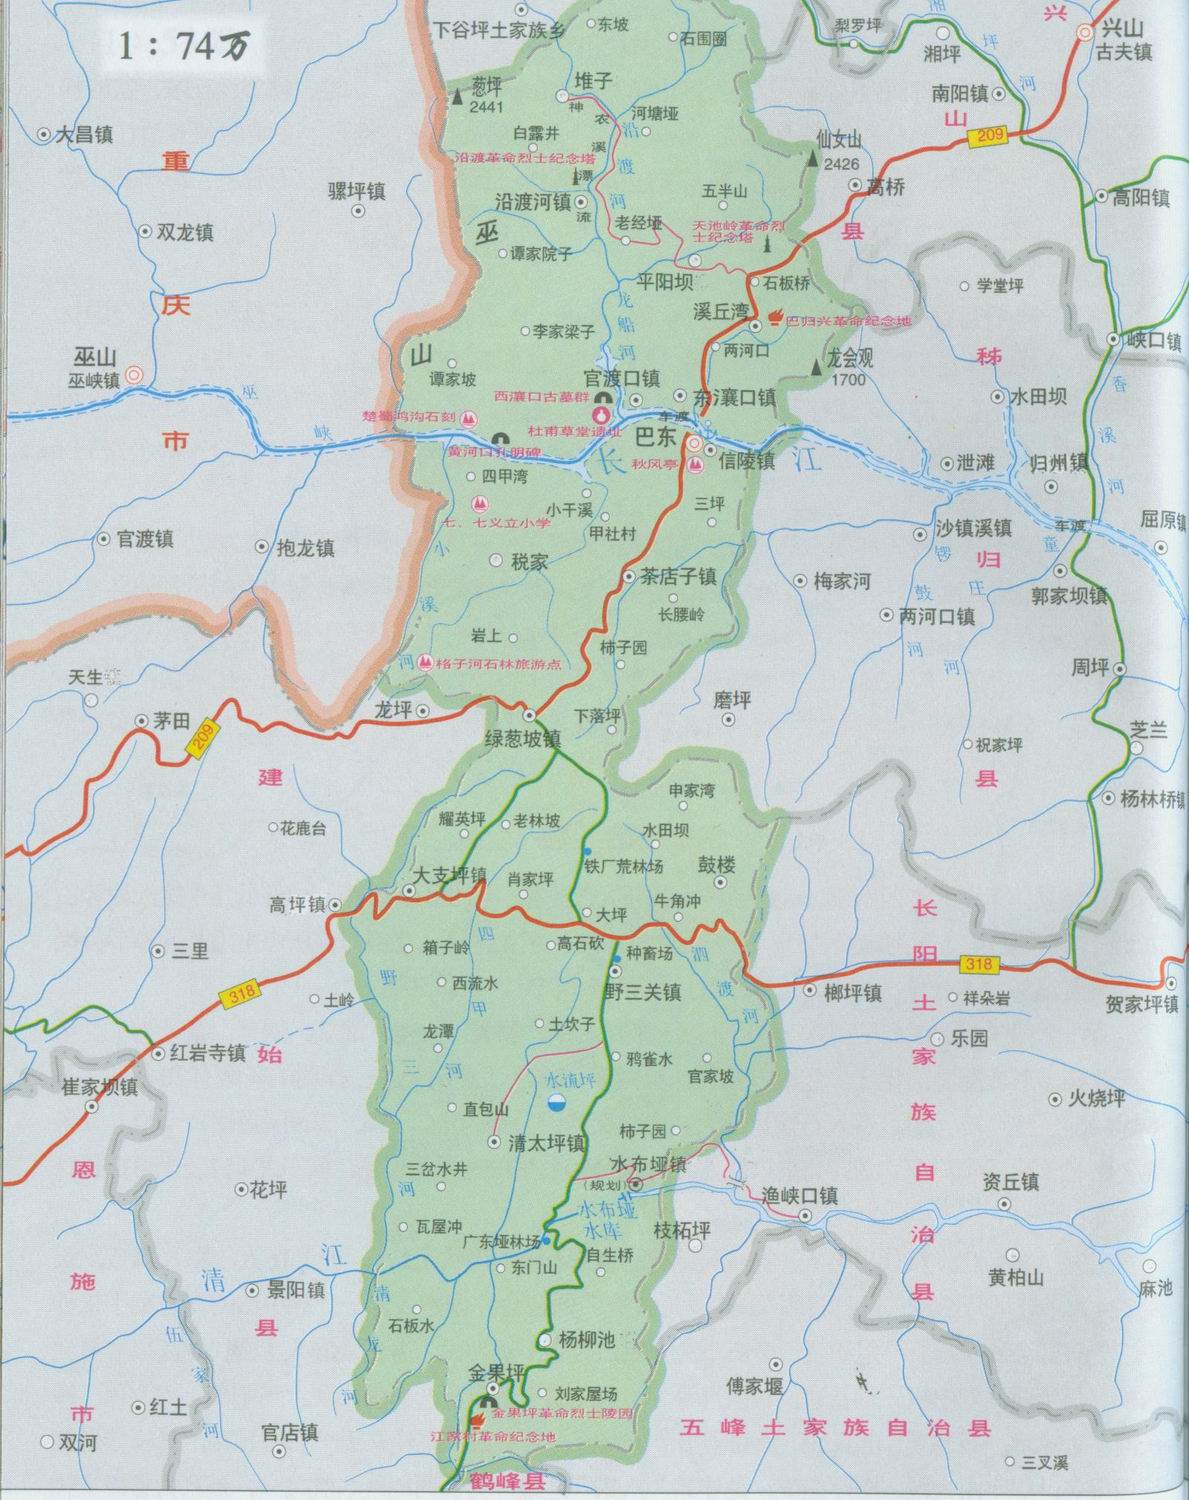 【壁纸】恩施地图全图:许昌市地图全图:许昌市地图全图